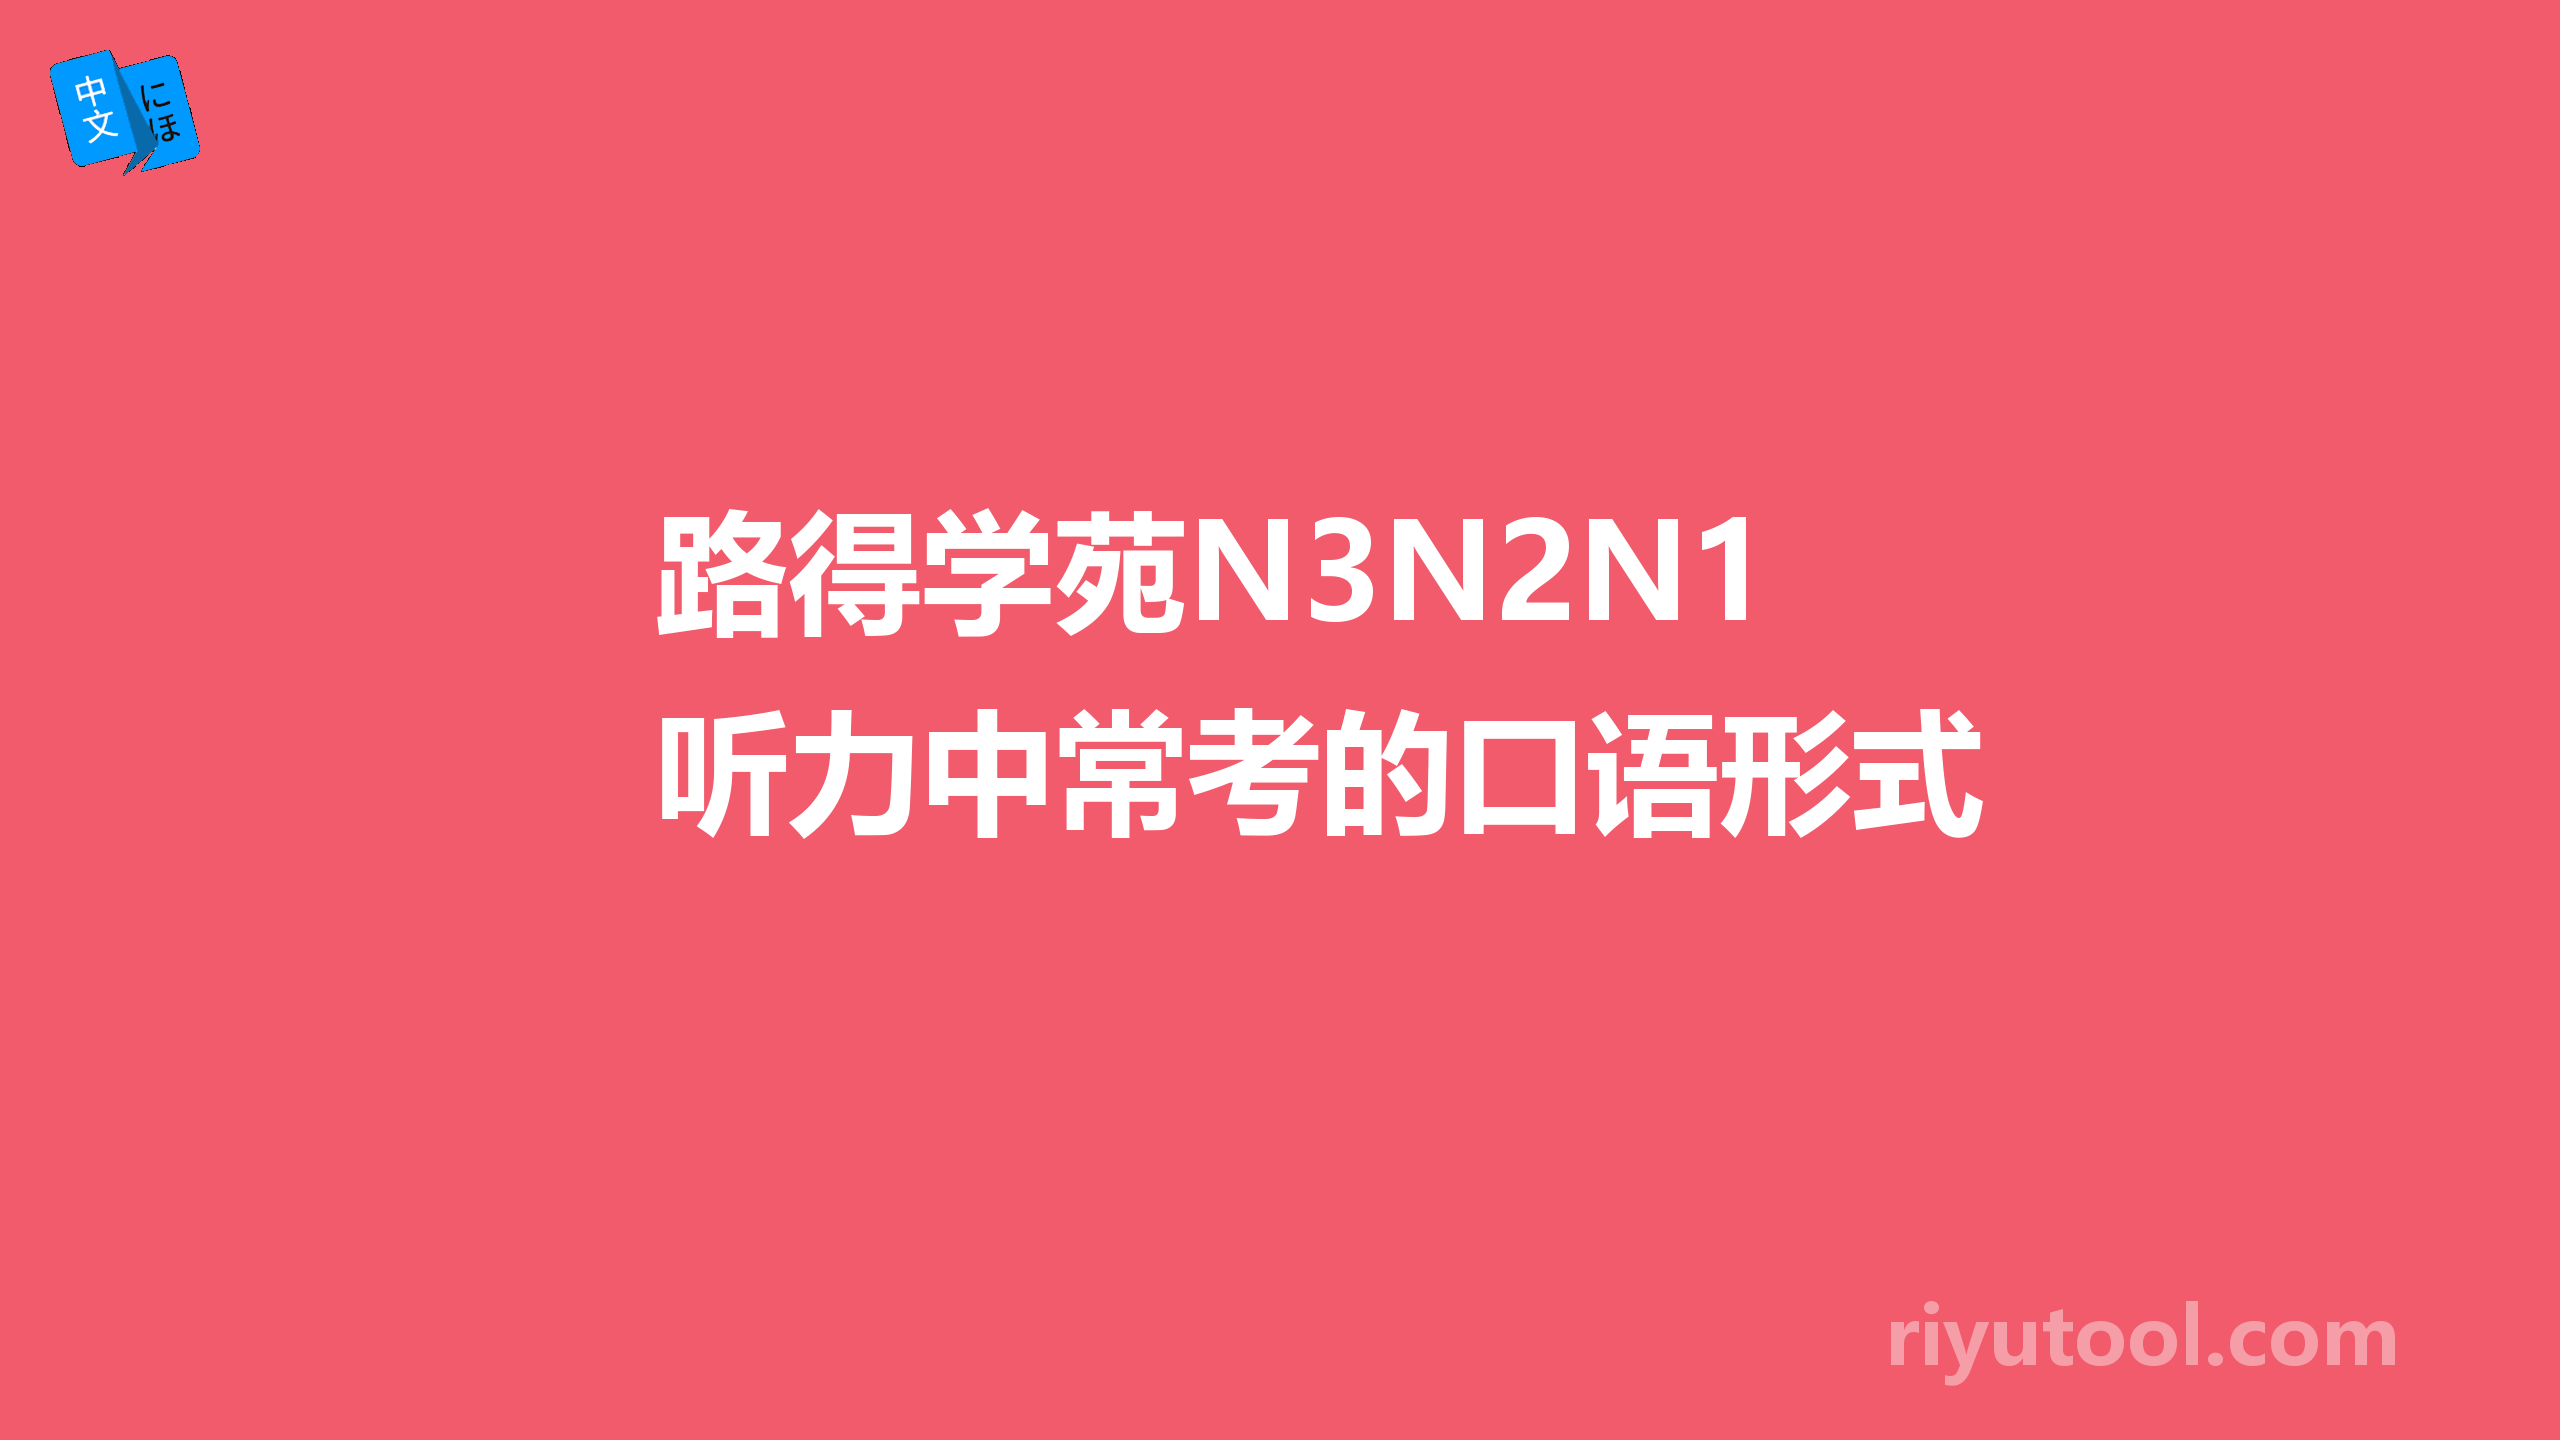 路得学苑N3N2N1听力中常考的口语形式